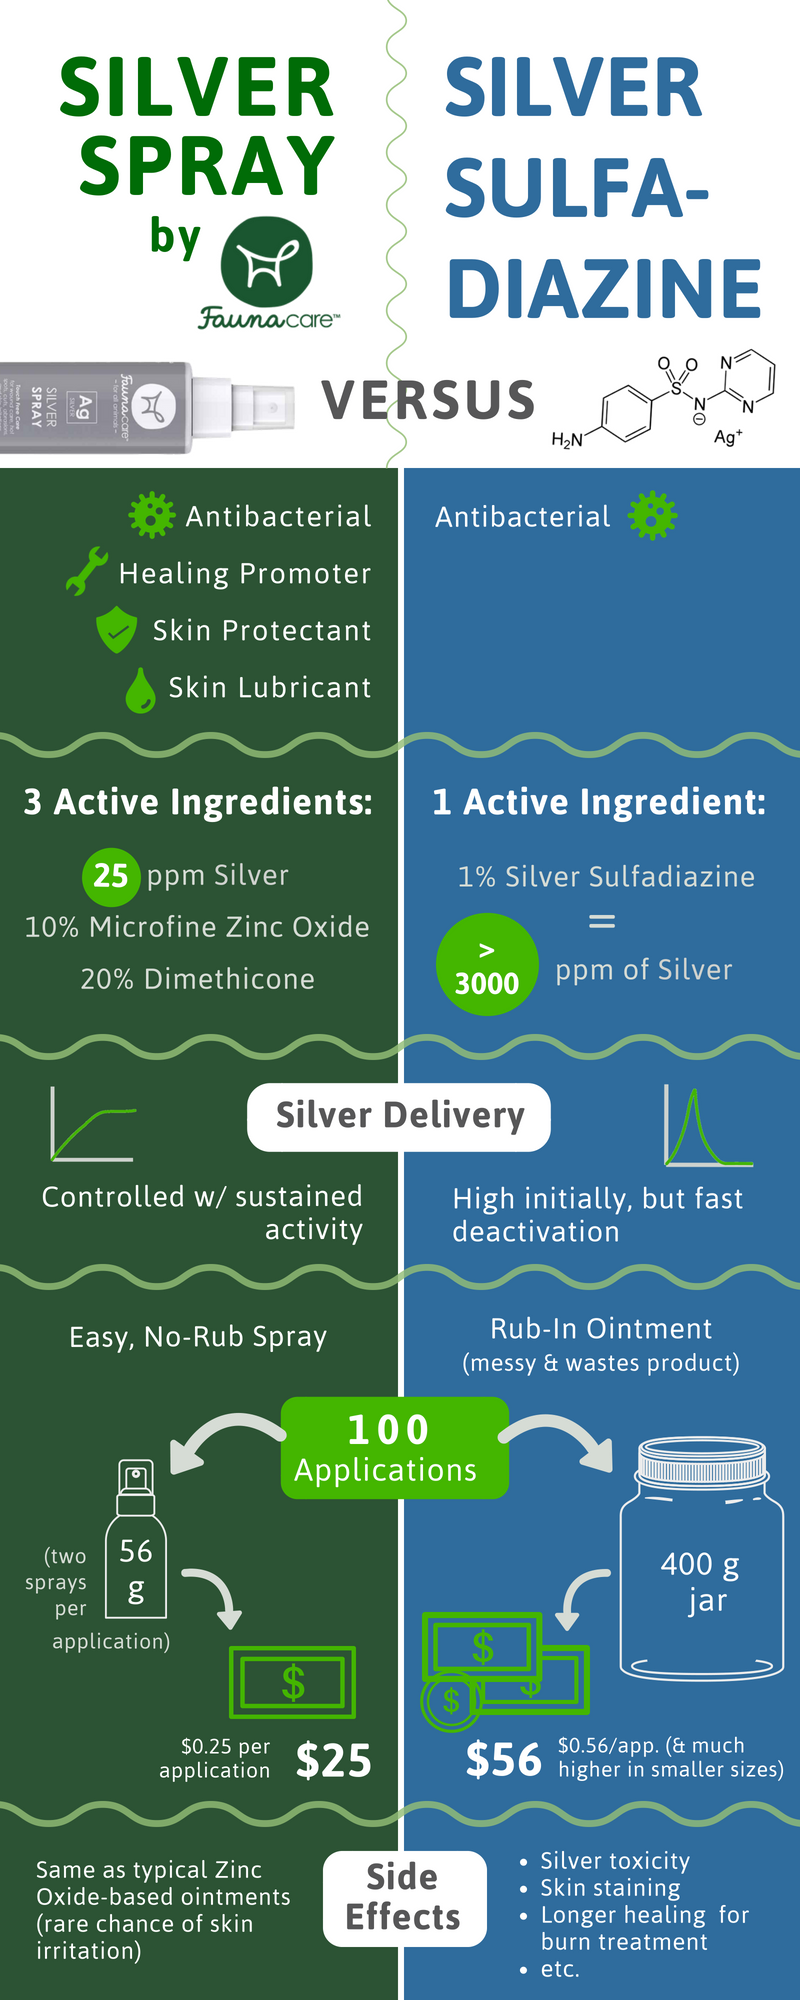 Waarom je zilverspray zou moeten gebruiken in plaats van zilversulfadiazine